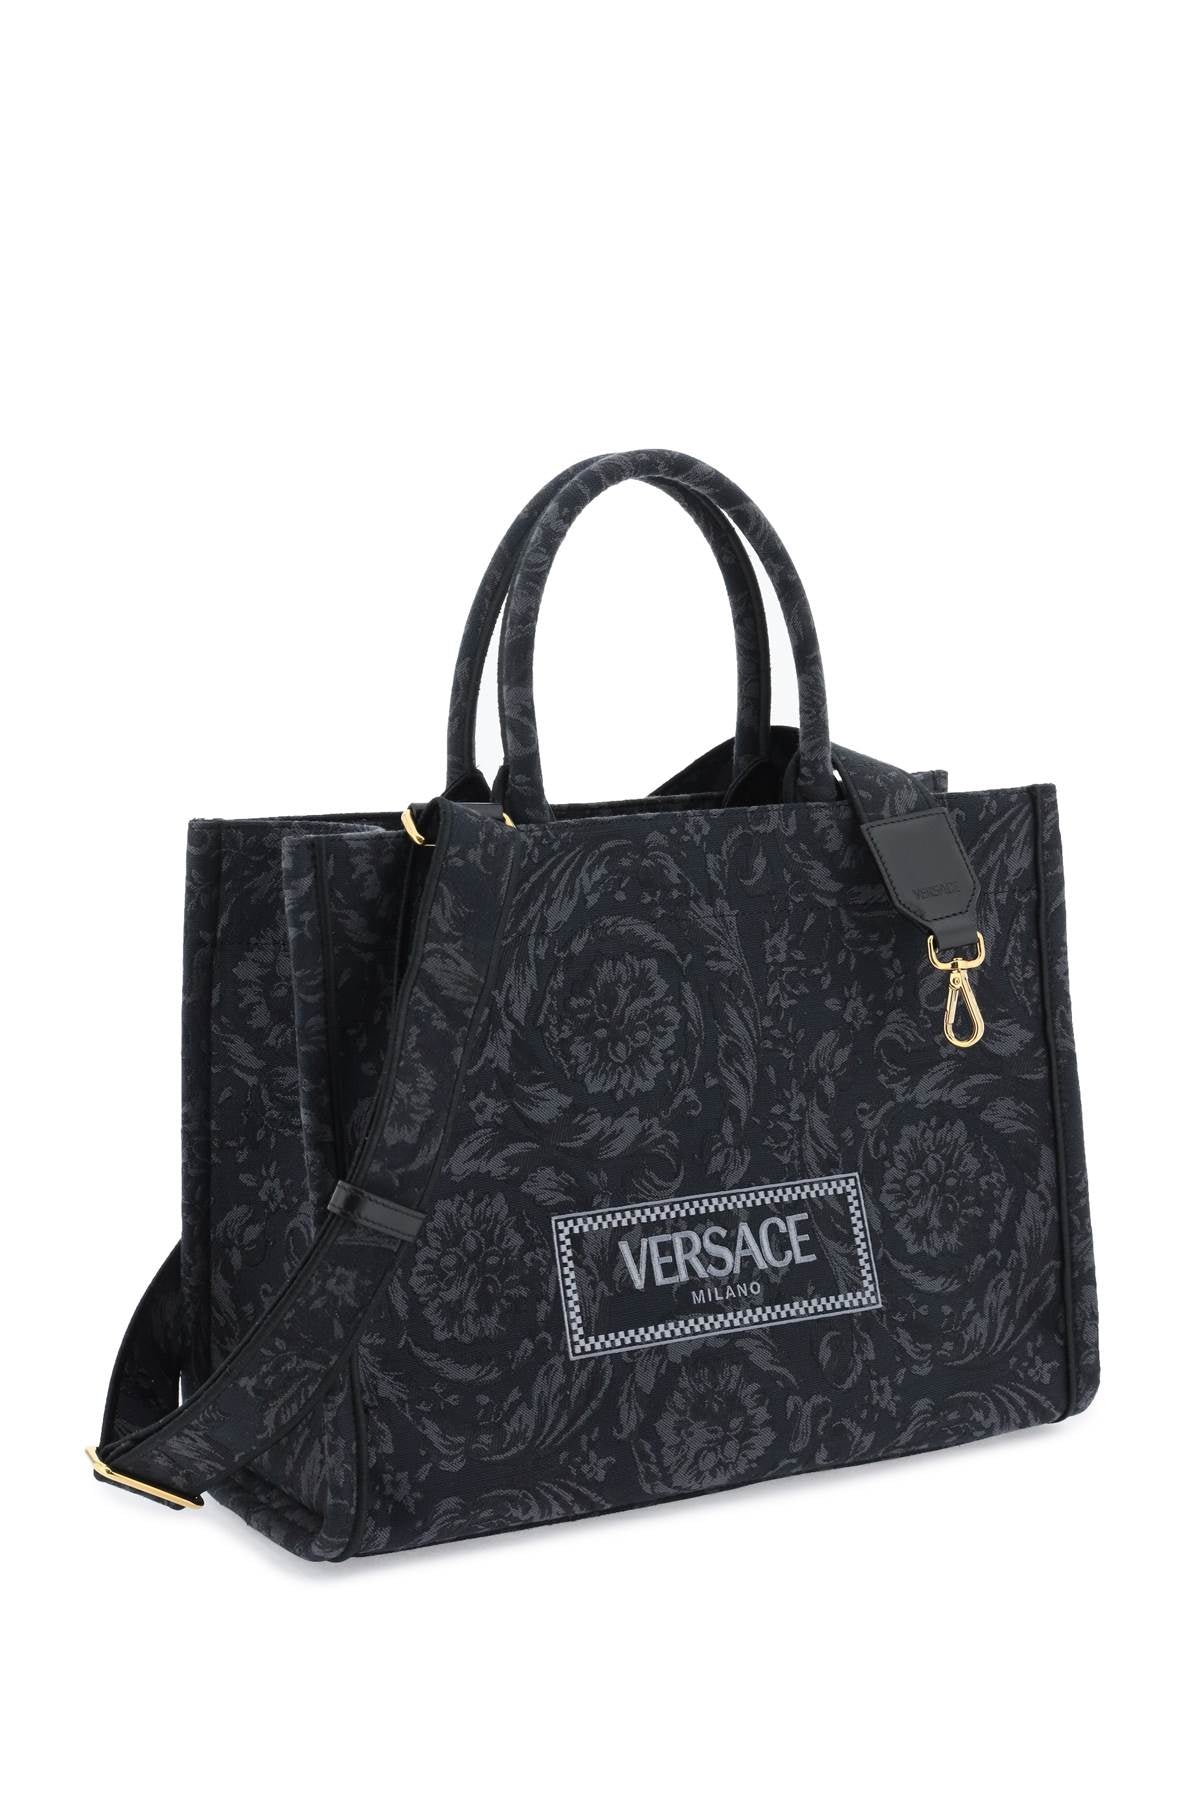 Versace athena barocco tote bag-2